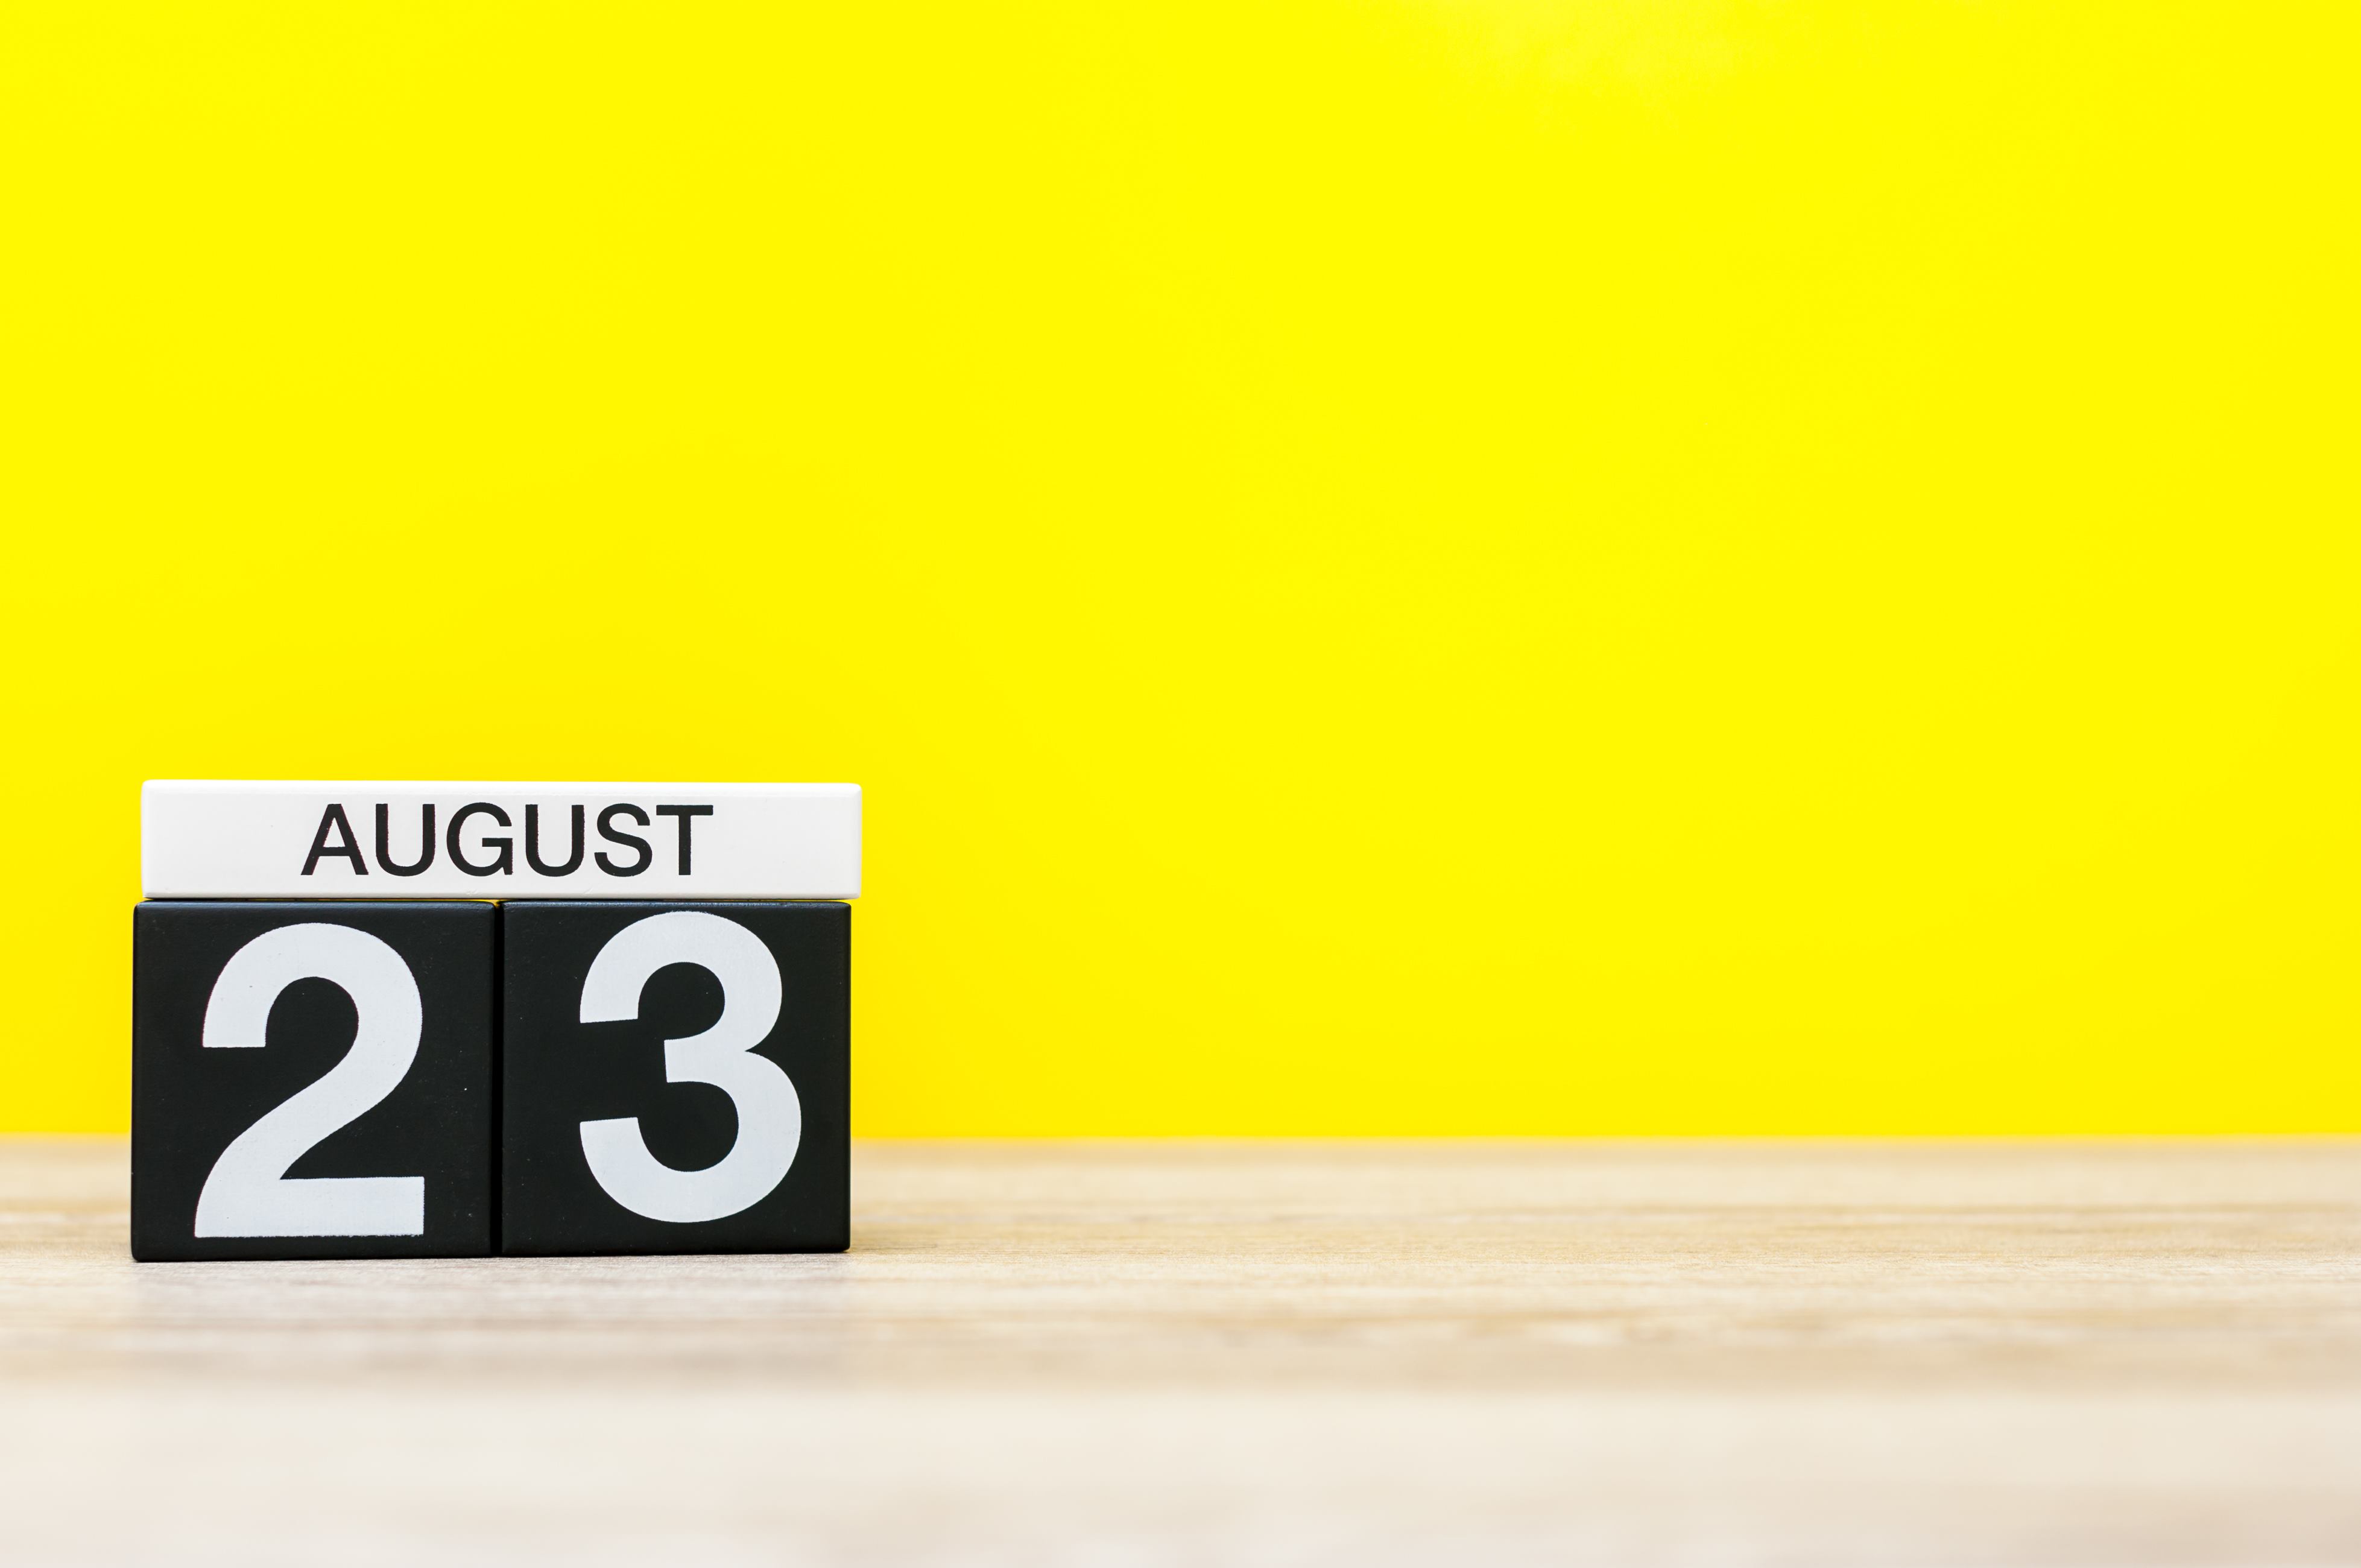 23 de agosto marcado en el calendario sobre fondo amarillo. | Fuente: Shutterstock